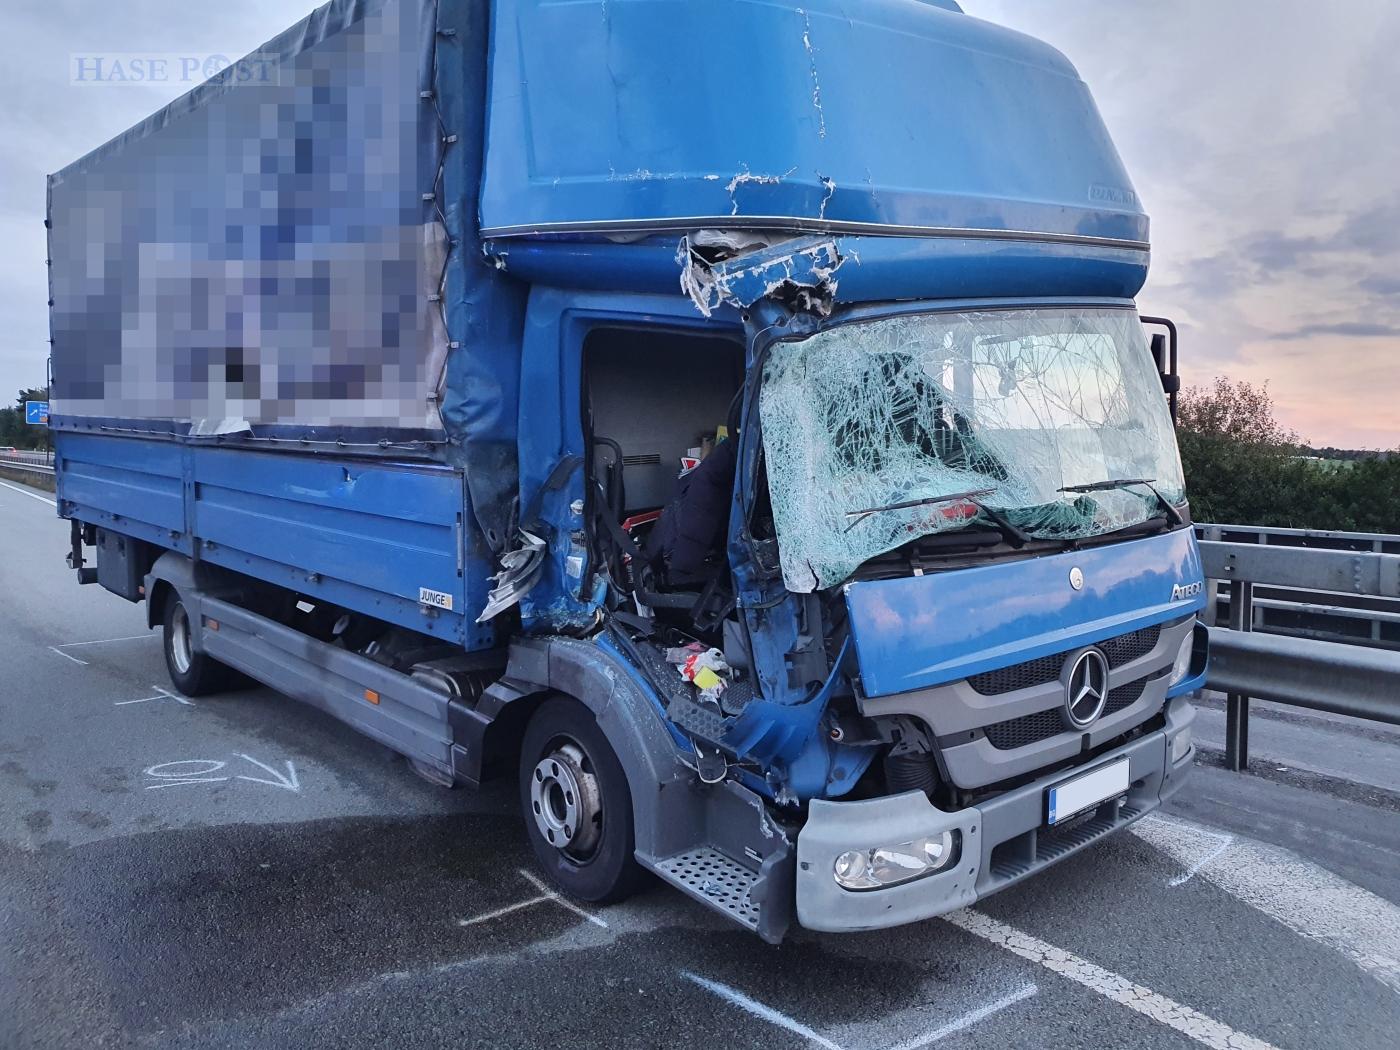 Unfall auf der Autobahn A1 – eine Person schwer, eventuell lebensgefährlich, verletzt